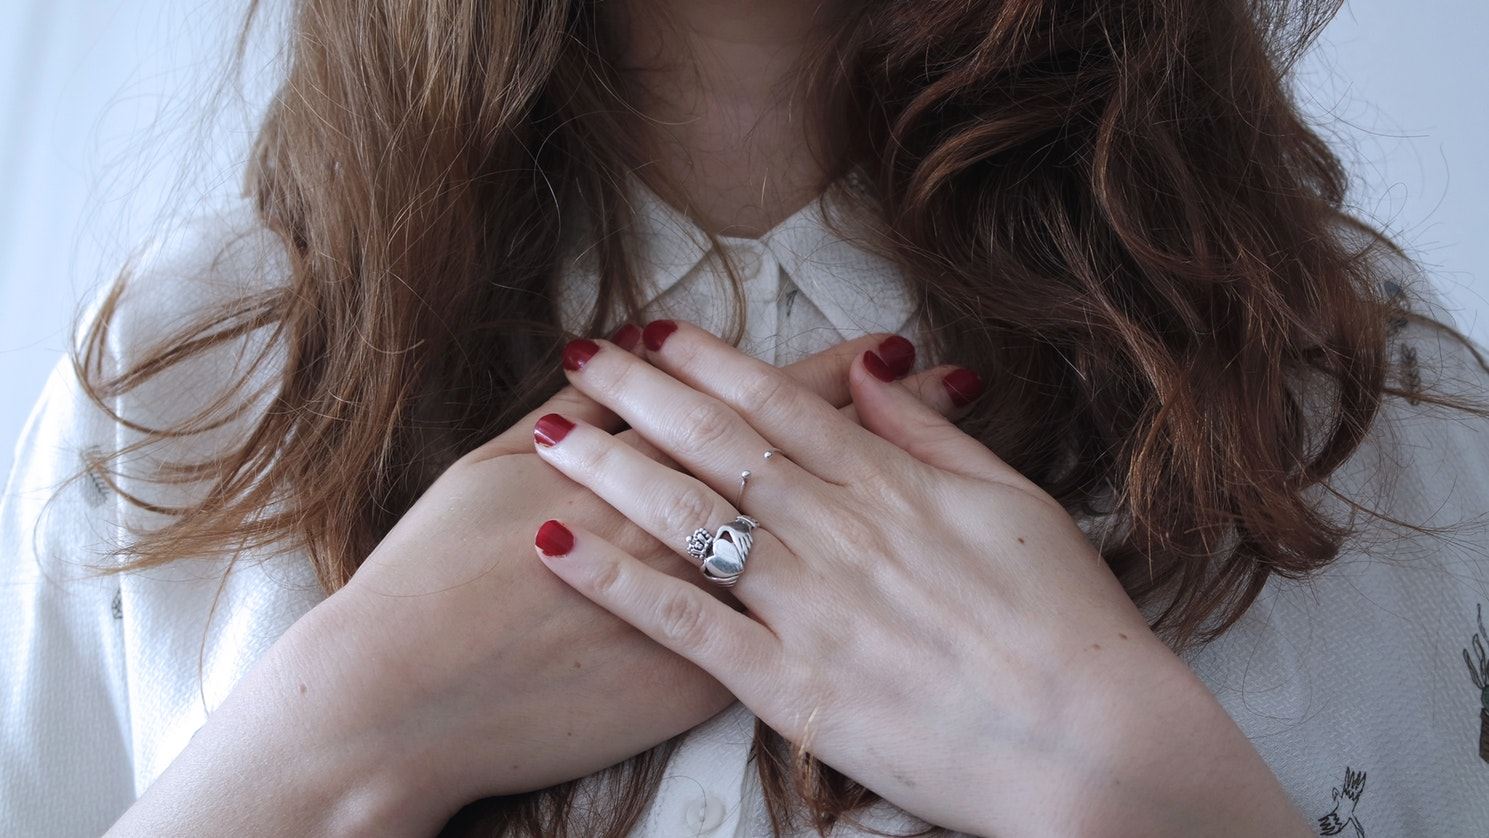 Een vrouw met rode vingernagels heeft haar handen op het hart. De vrouw heeft een zilvere ring om haar vinger.